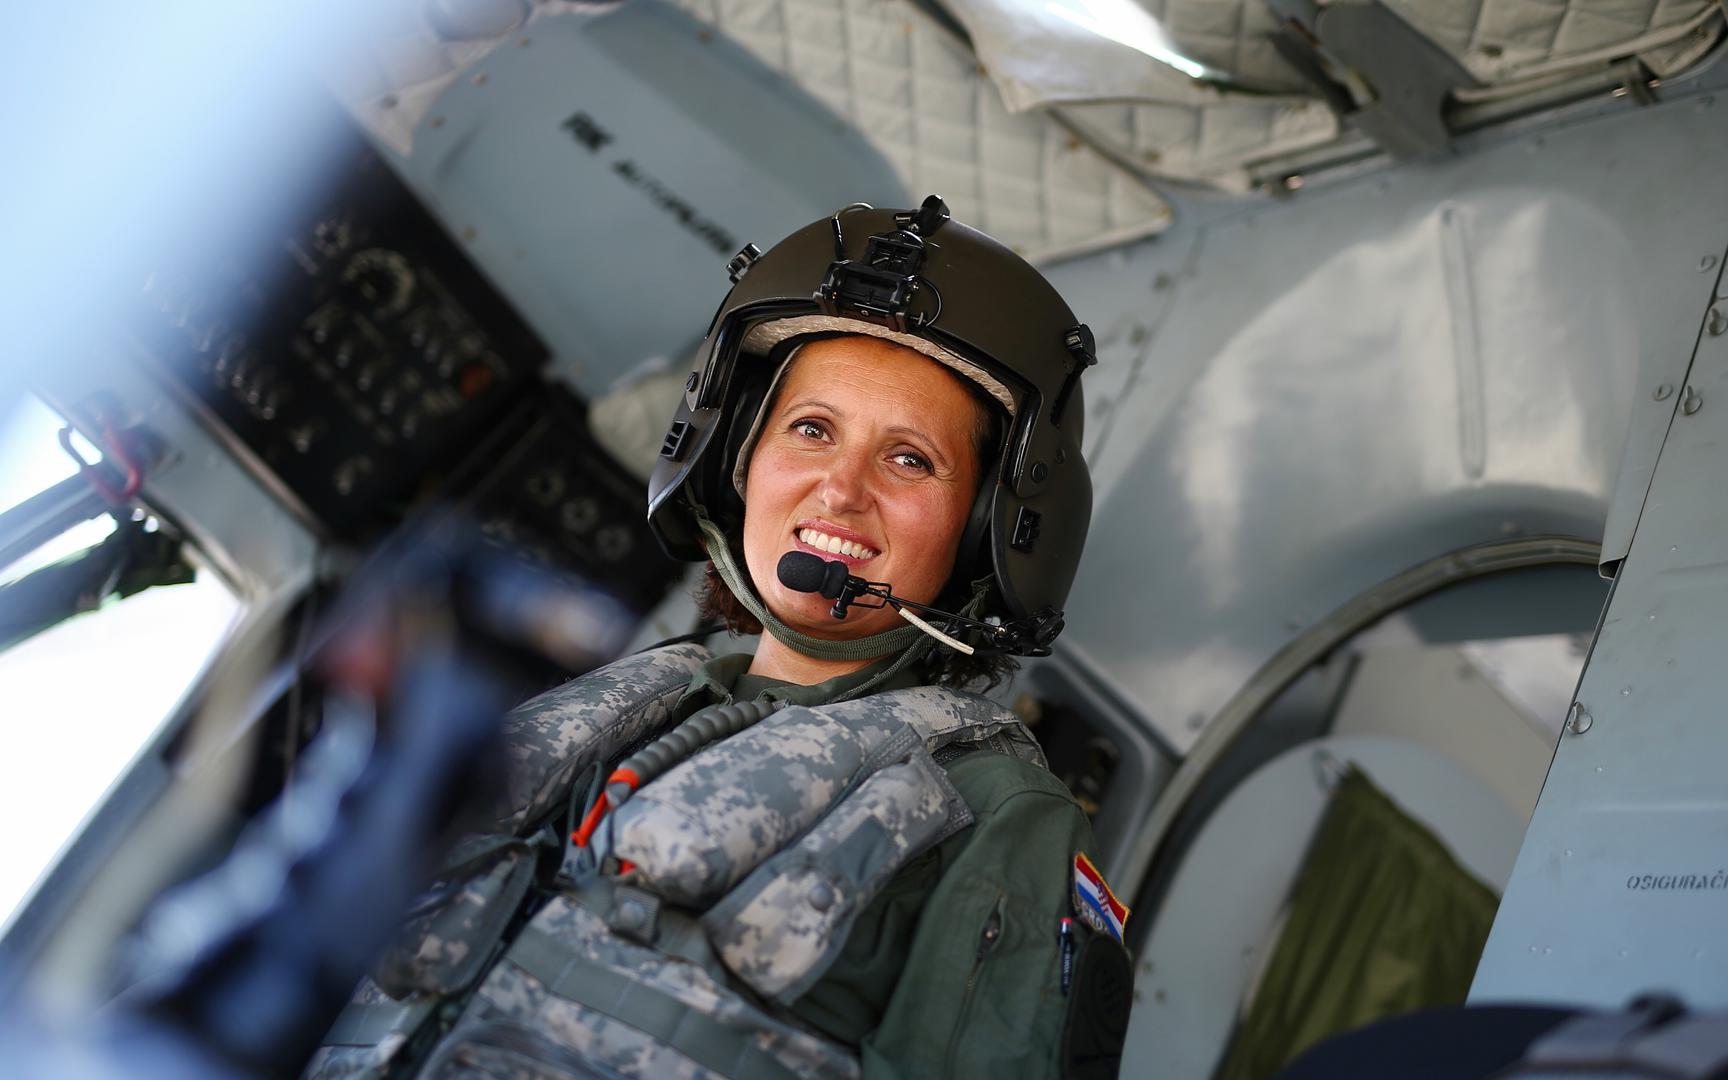 Ona je prva i jedina žena koja ima specijalnost tehničara-letača, aviomehaničara na helikopteru Mi8, u Hrvatskom ratnom zrakoplovstvu (HRZ). U sastavu HRZ-a nalazi se četrnaest transportnih helikoptera Mi-8 od čega tri imaju oznaku Mi-8T, a njih jedanest Mi-8MTV-1.